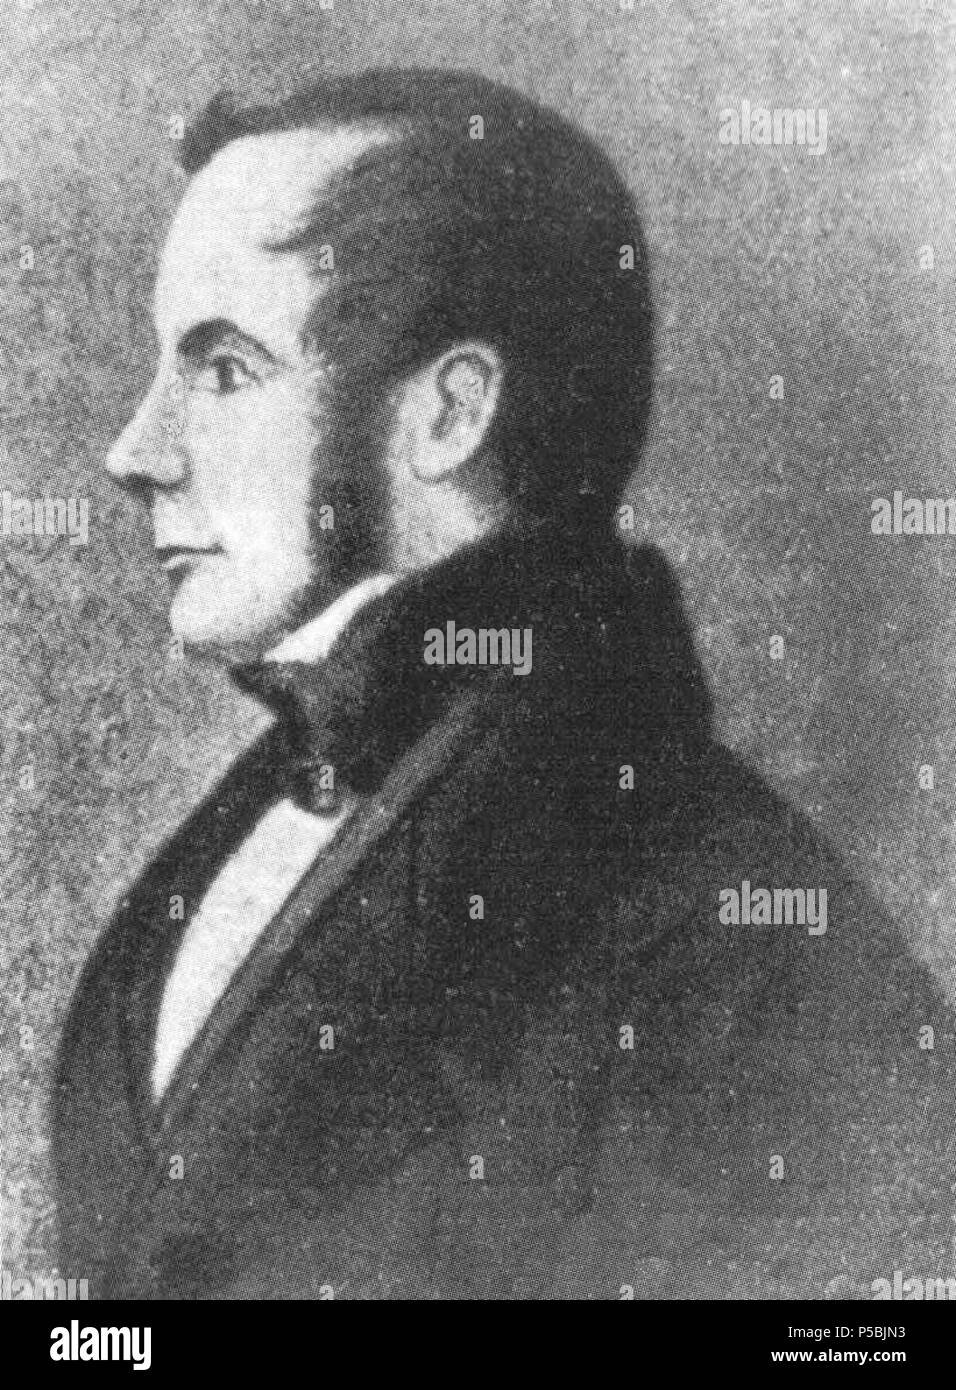 N/A. Italiano: Ferdinando Maestri (1786-1860), avvocato e senatore parmigiano. circa 1840. non noto 553 Ferdinando Maestri Foto Stock